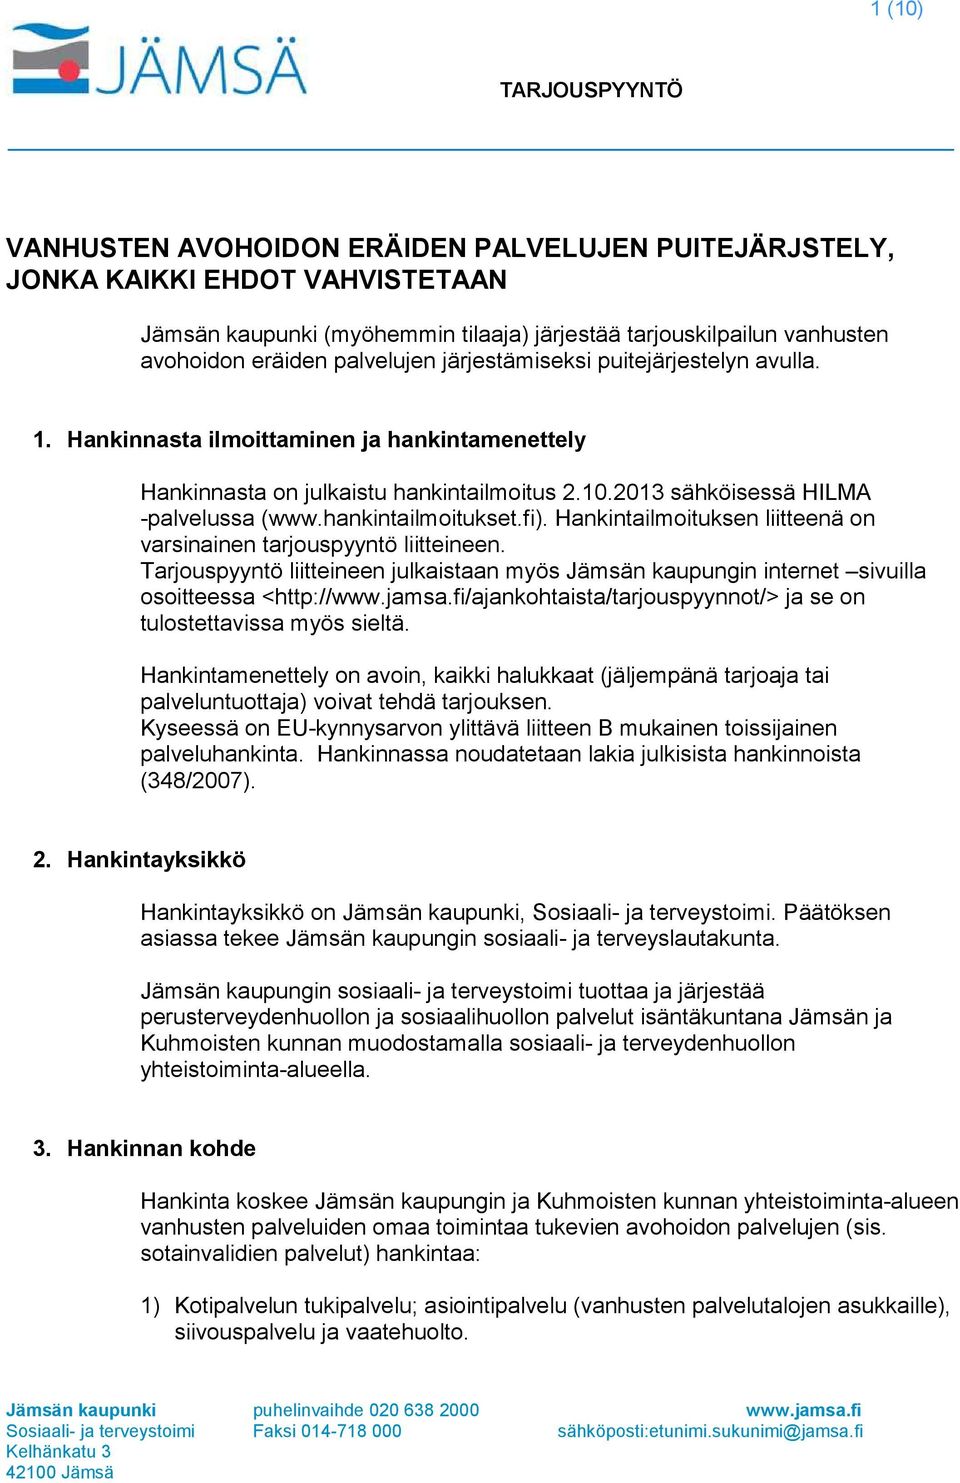 fi). Hankintailmoituksen liitteenä on varsinainen tarjouspyyntö liitteineen. Tarjouspyyntö liitteineen julkaistaan myös Jämsän kaupungin internet sivuilla osoitteessa <http://www.jamsa.